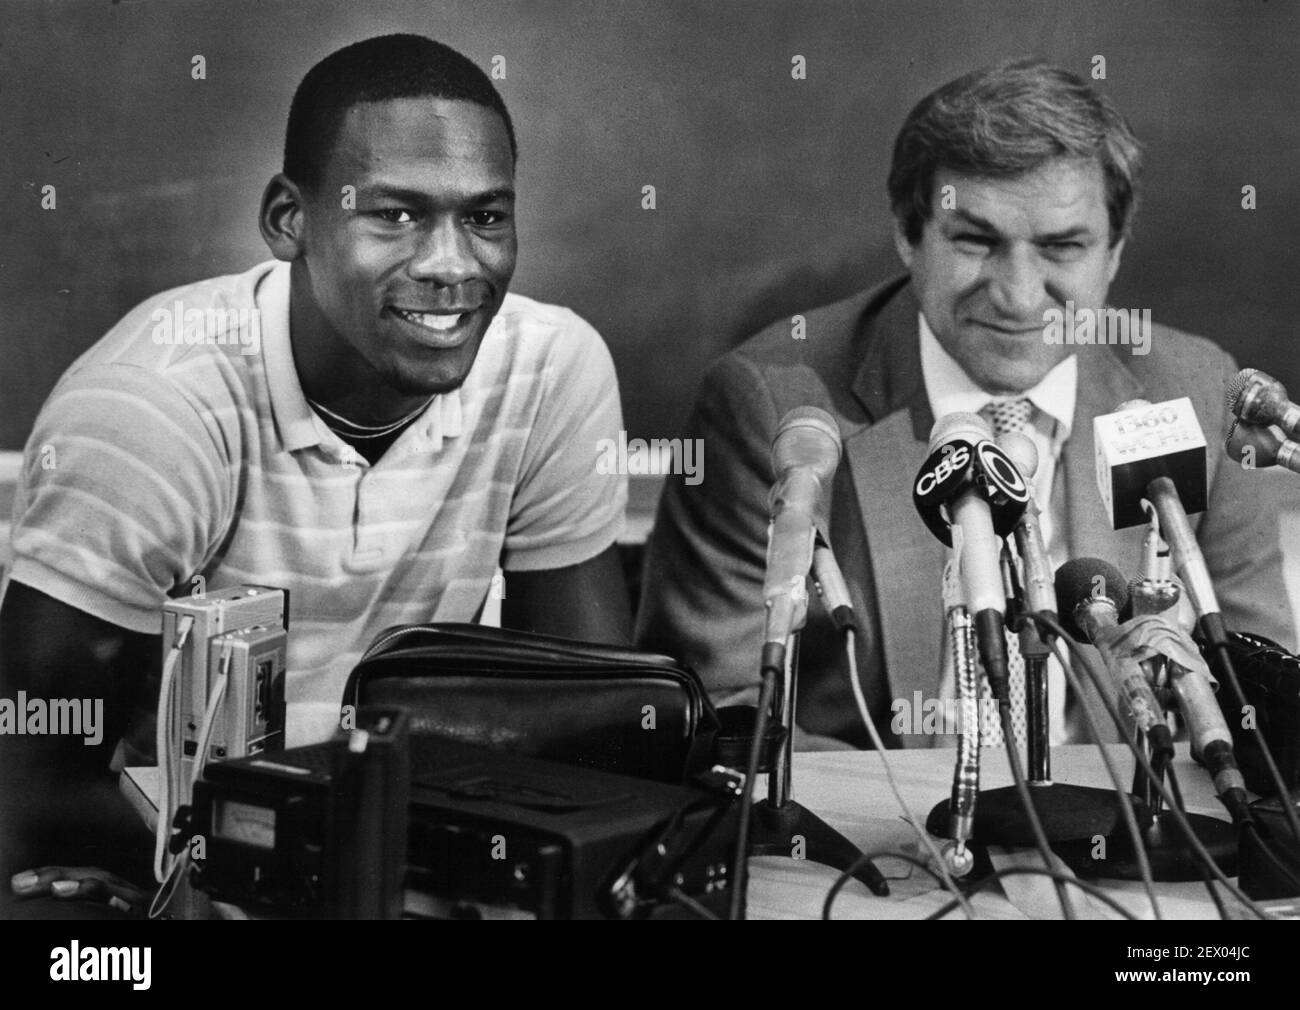 Michael Jordan es todo sonríe junto con el entrenador Dean Smith mientras Jordan anuncia en una conferencia de prensa de 1984 que él renunciará a su último año en la universidad para jugar baloncesto profesional. (Foto de Raleigh News & Observer/TNS) *** por favor use crédito del campo de crédito *** Foto de stock